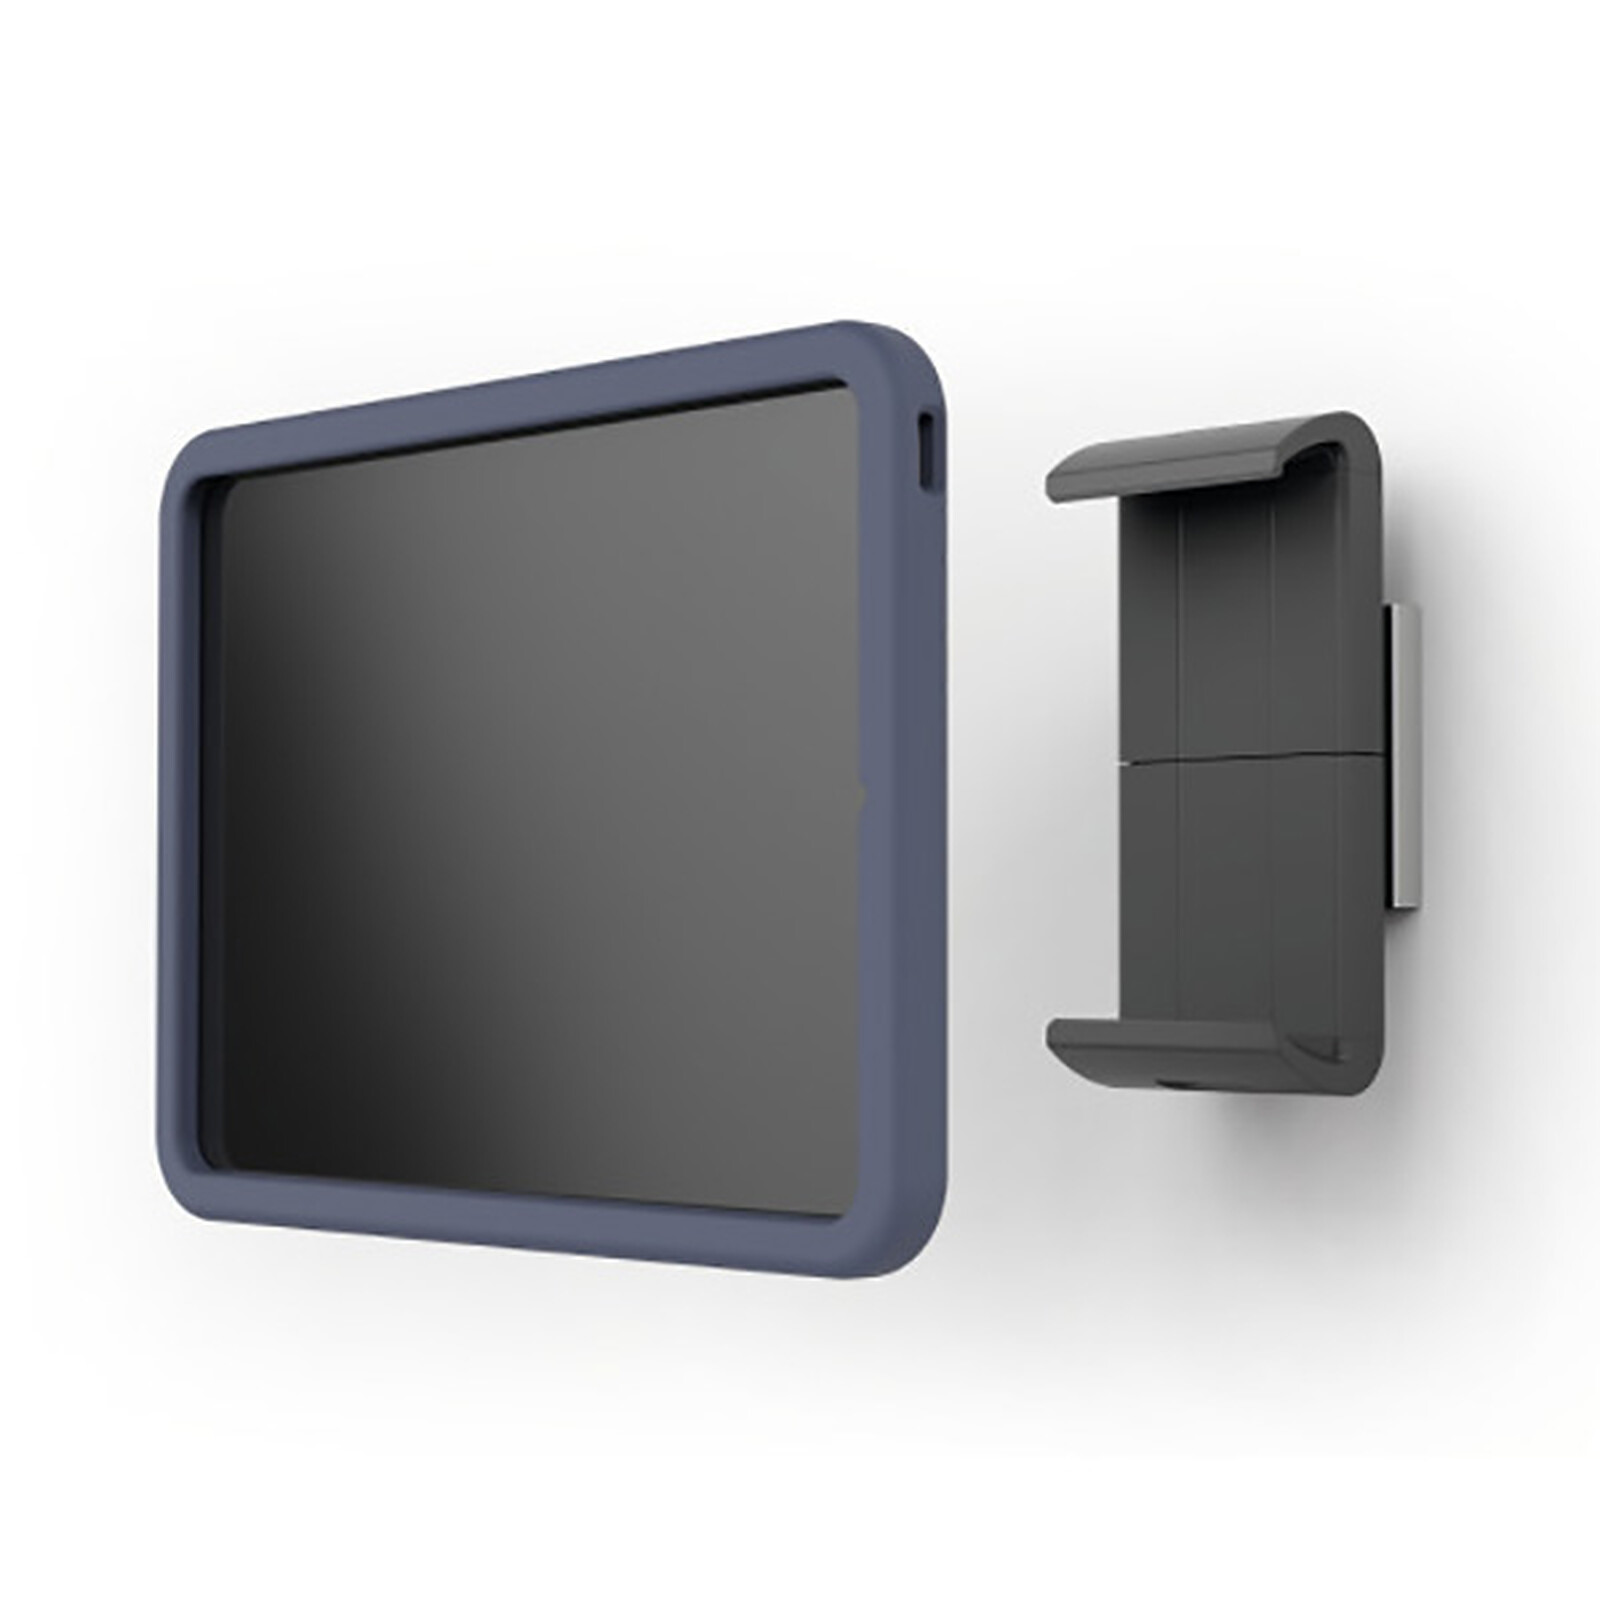 Support de tablette CTA Digital Multi-Flex de sécurité 2-en-1 de et support  mural magnétique pour tablettes de 17.8 cm (7 pouces) à 35.6 cm (14 pouces)  - Noir 